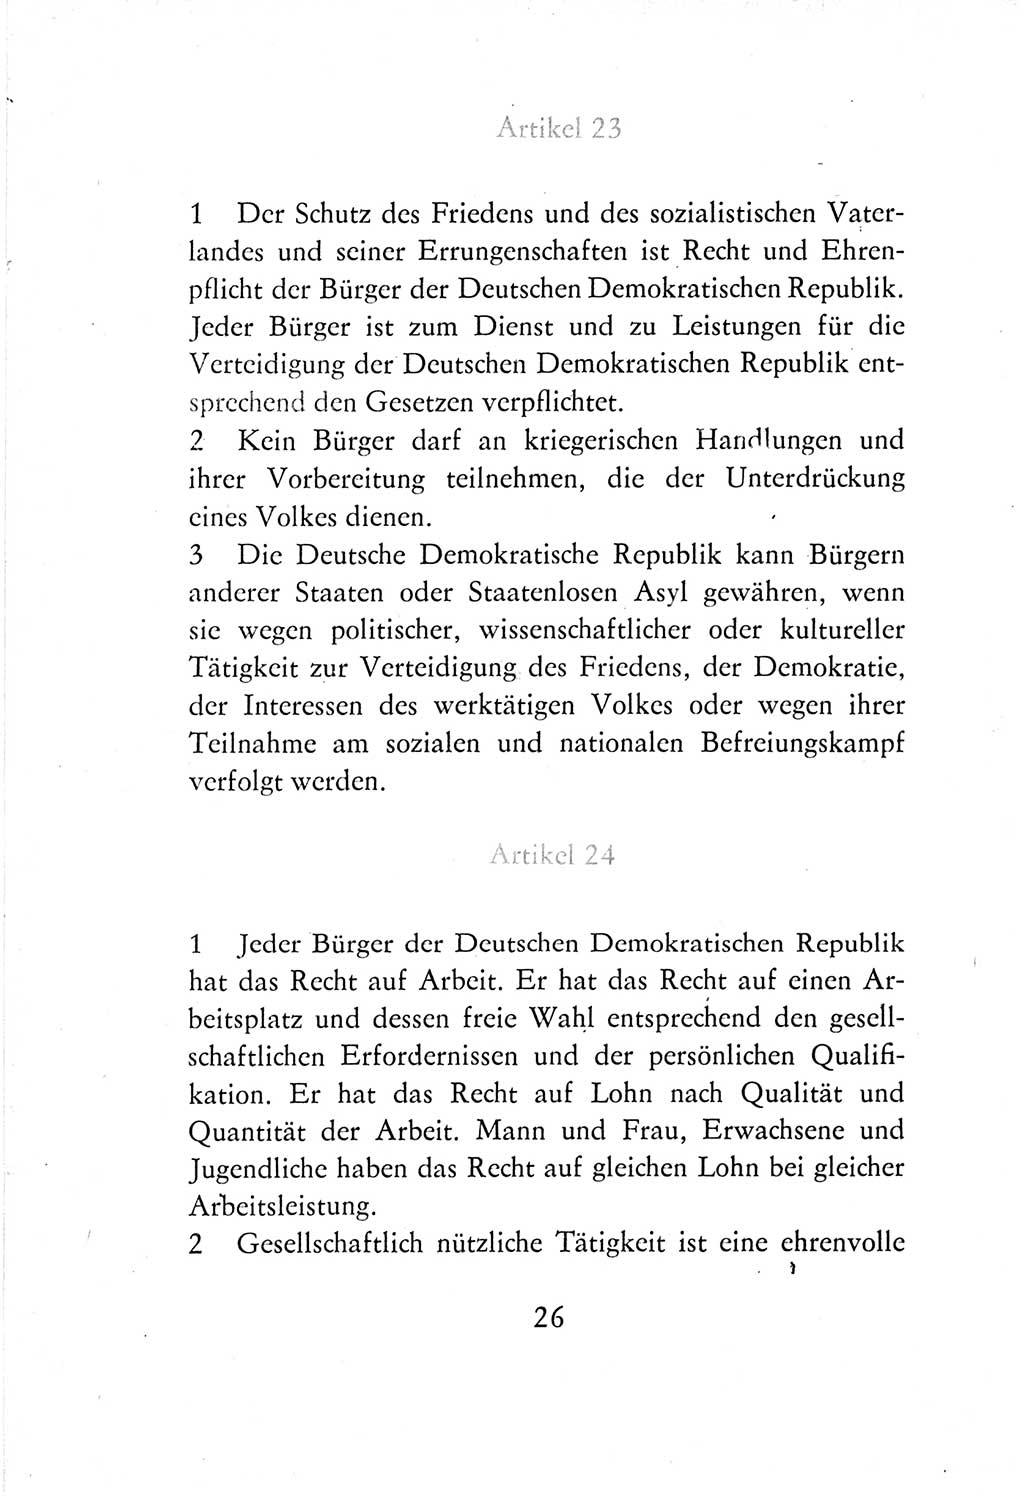 Verfassung der Deutschen Demokratischen Republik (DDR) vom 7. Oktober 1974, Seite 26 (Verf. DDR 1974, S. 26)